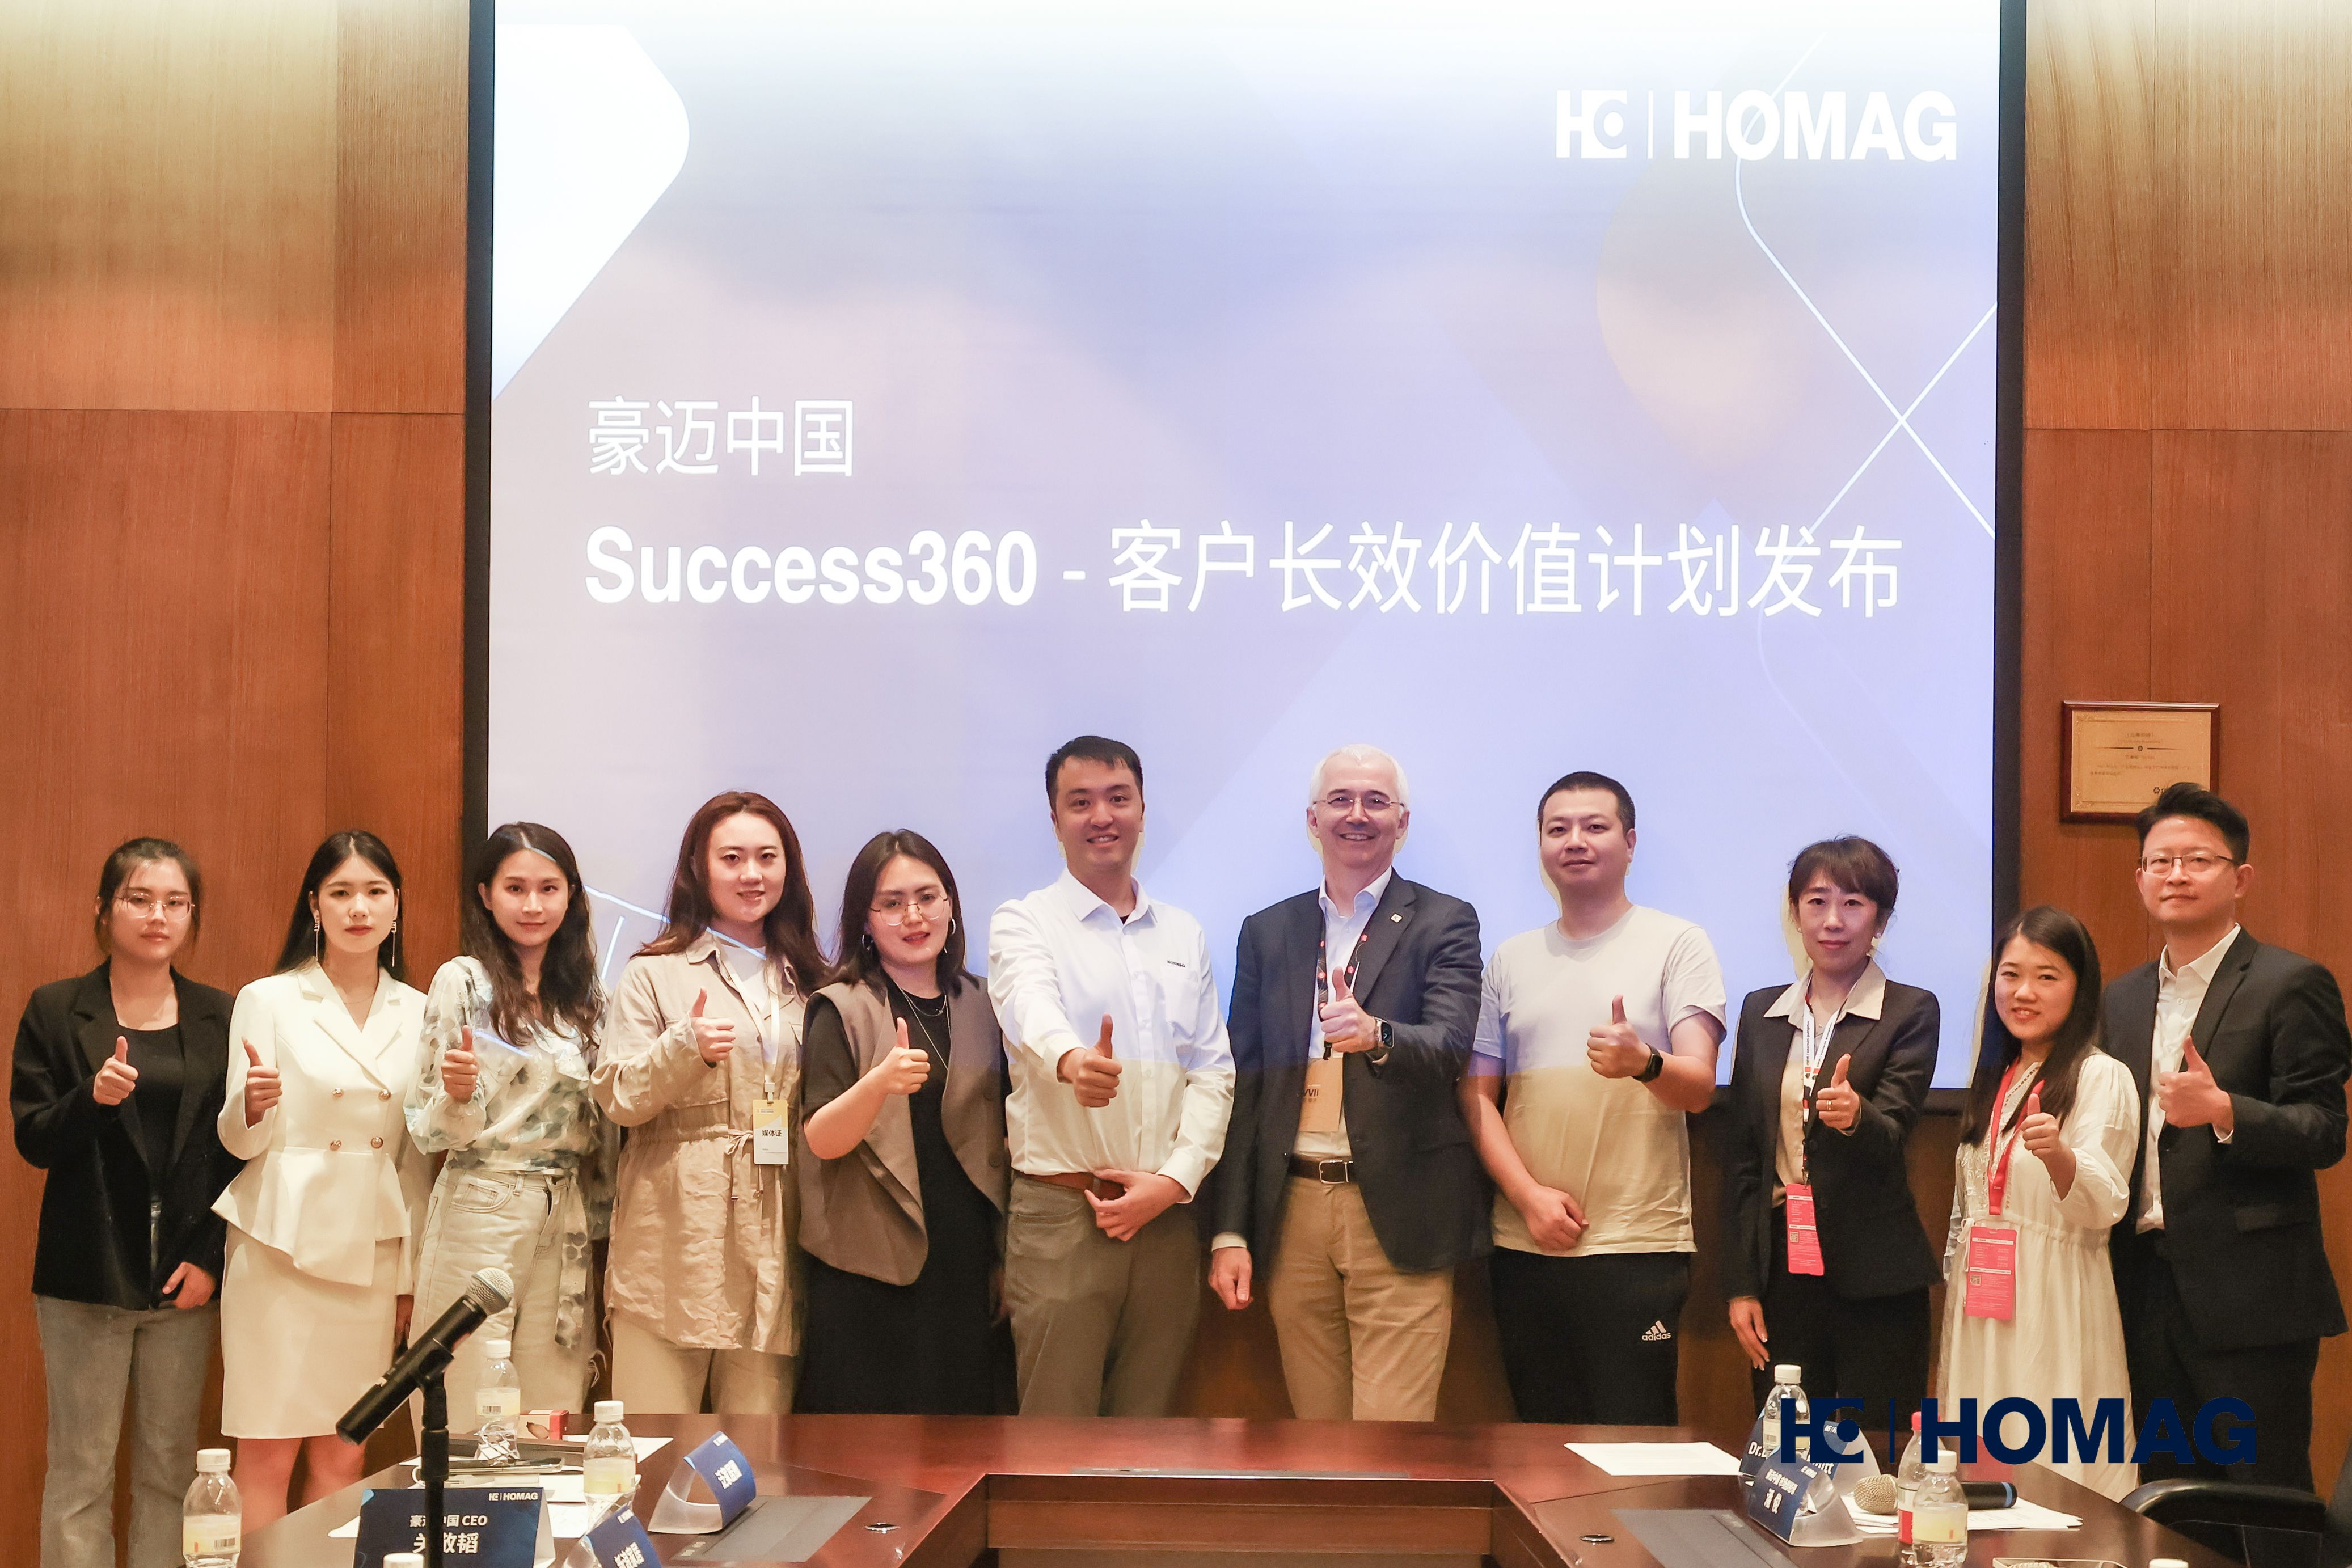 豪迈中国发布“Success360 - 客户长效价值计划”， 助力客户实现长期成功